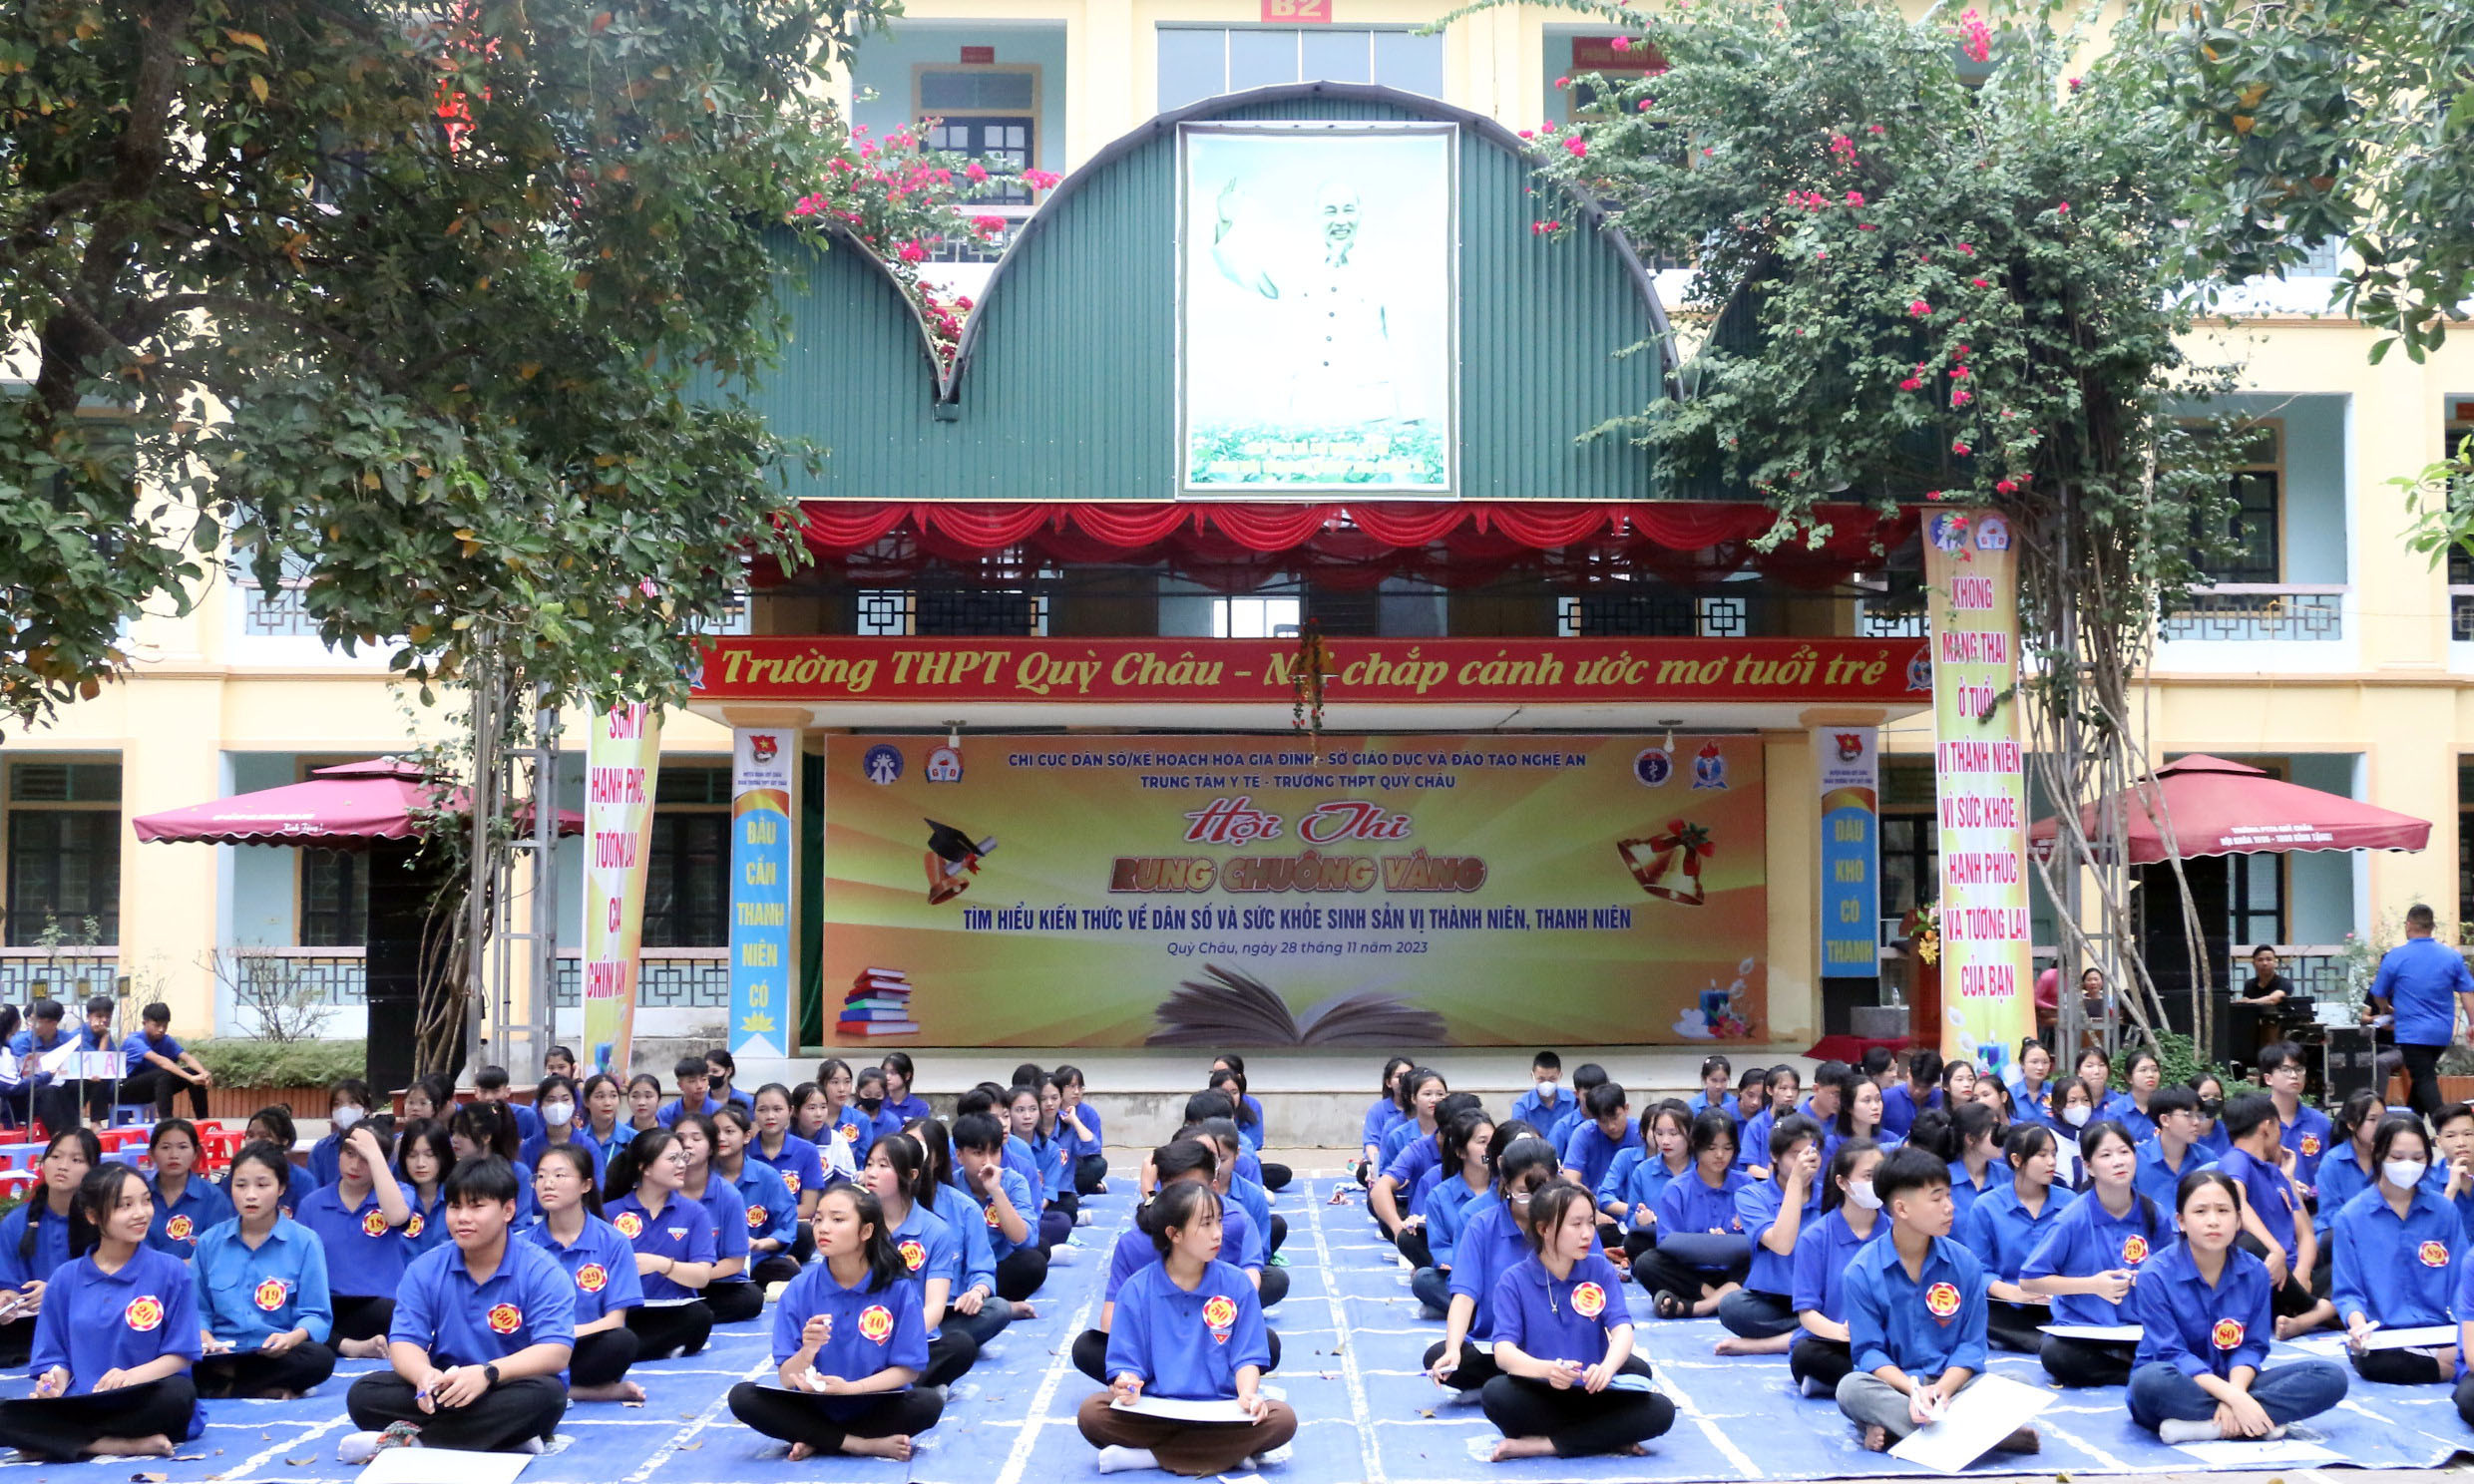 bna_100 thí sinh đại diện cho hơn 1600 học sinh của Trường THPT Quỳ Châu tham gia cuộc thi. Ảnh - Mỹ Hà.jpeg